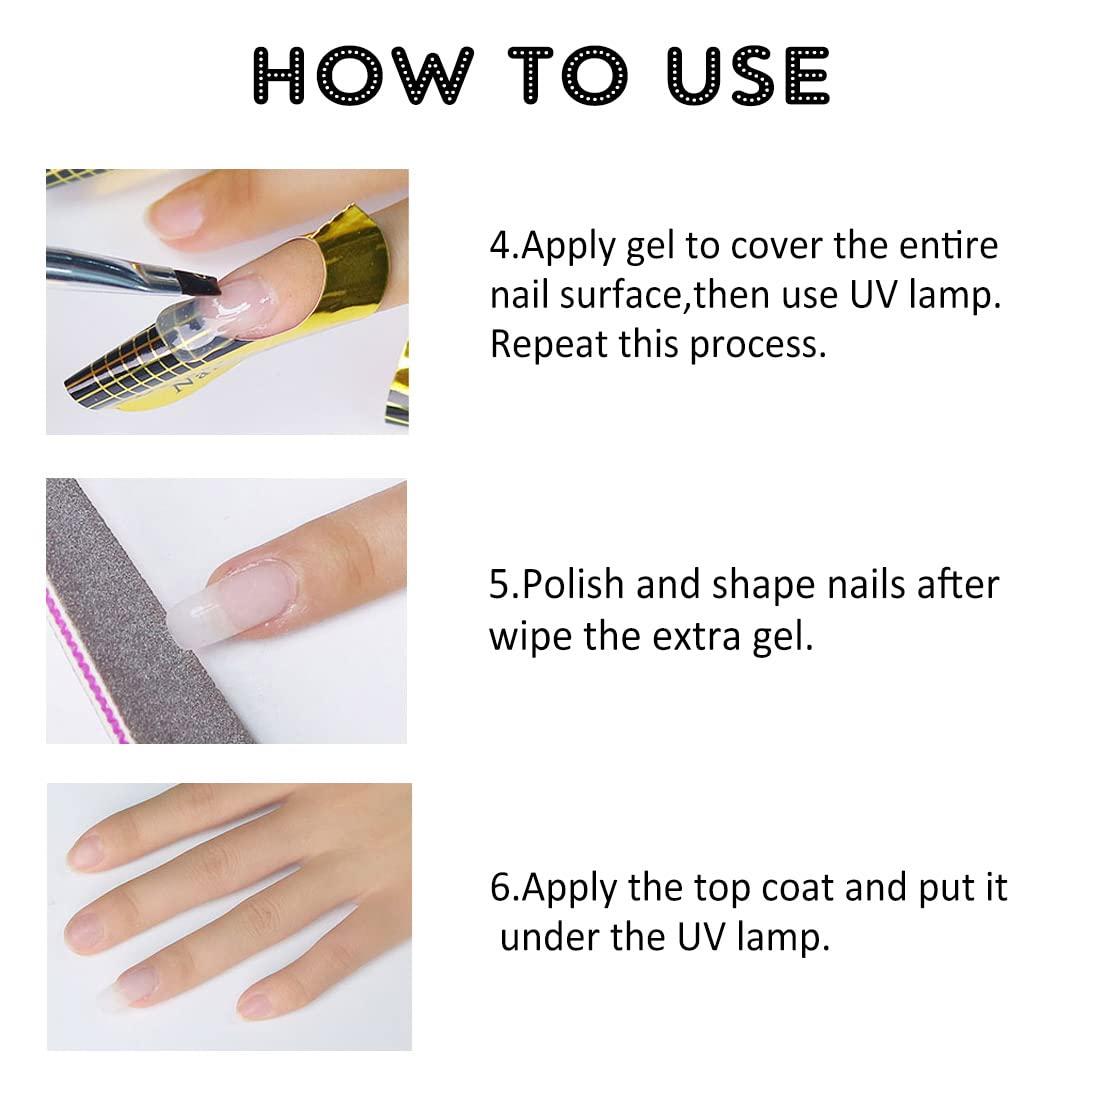 How to Remove Gel Extension Nails - L'Oréal Paris